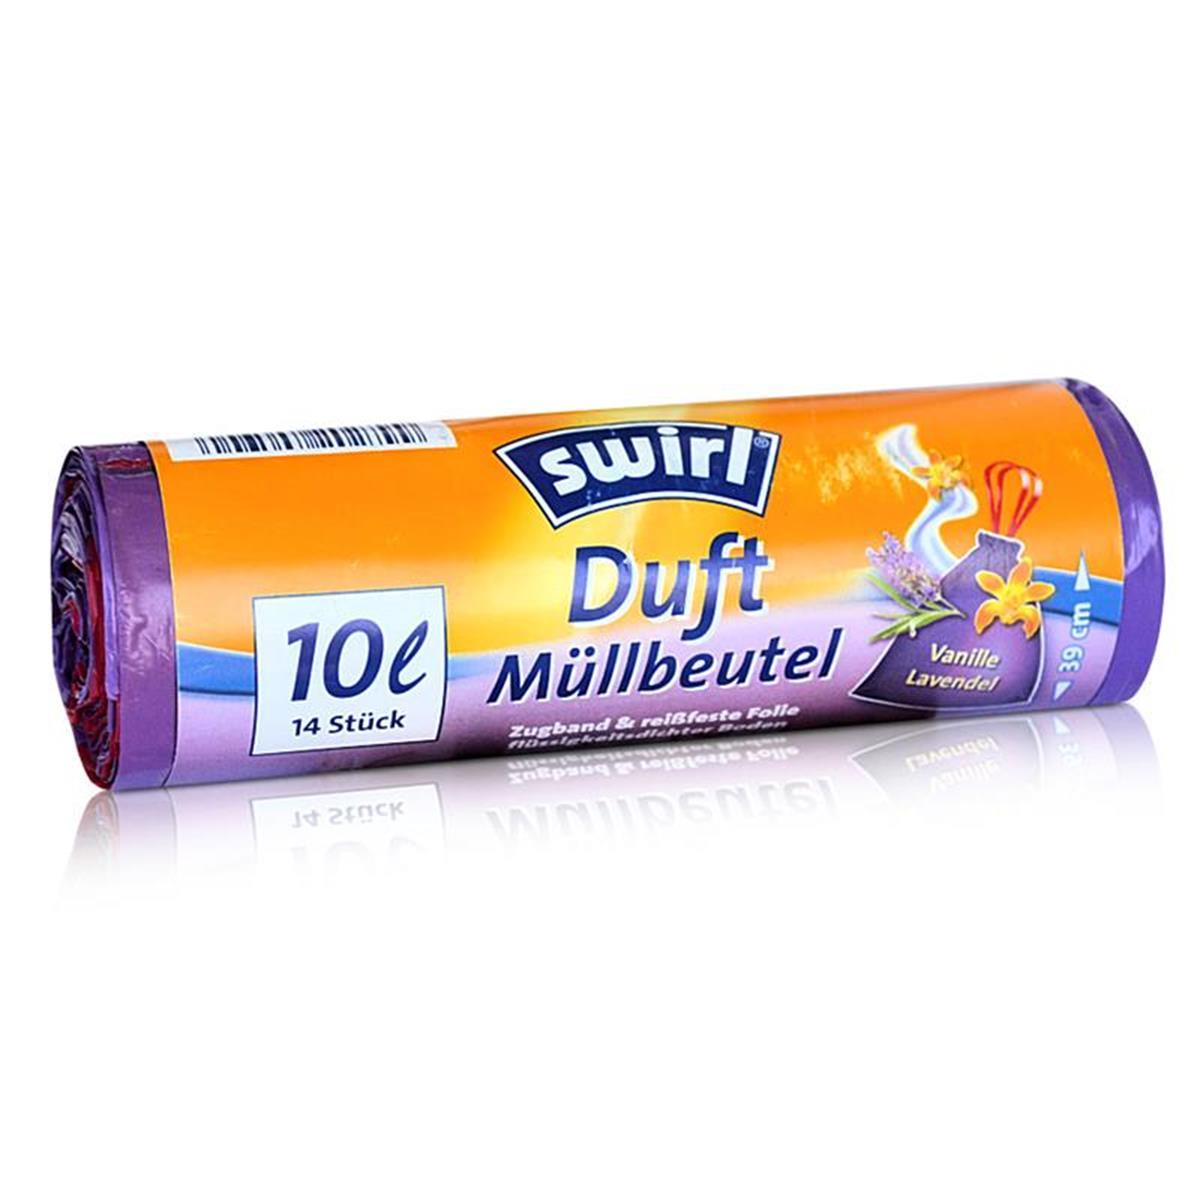 Swirl Duft Mllbeutel 10L ( 14 stk./ Rolle ) Vanille / Lavendel Duft